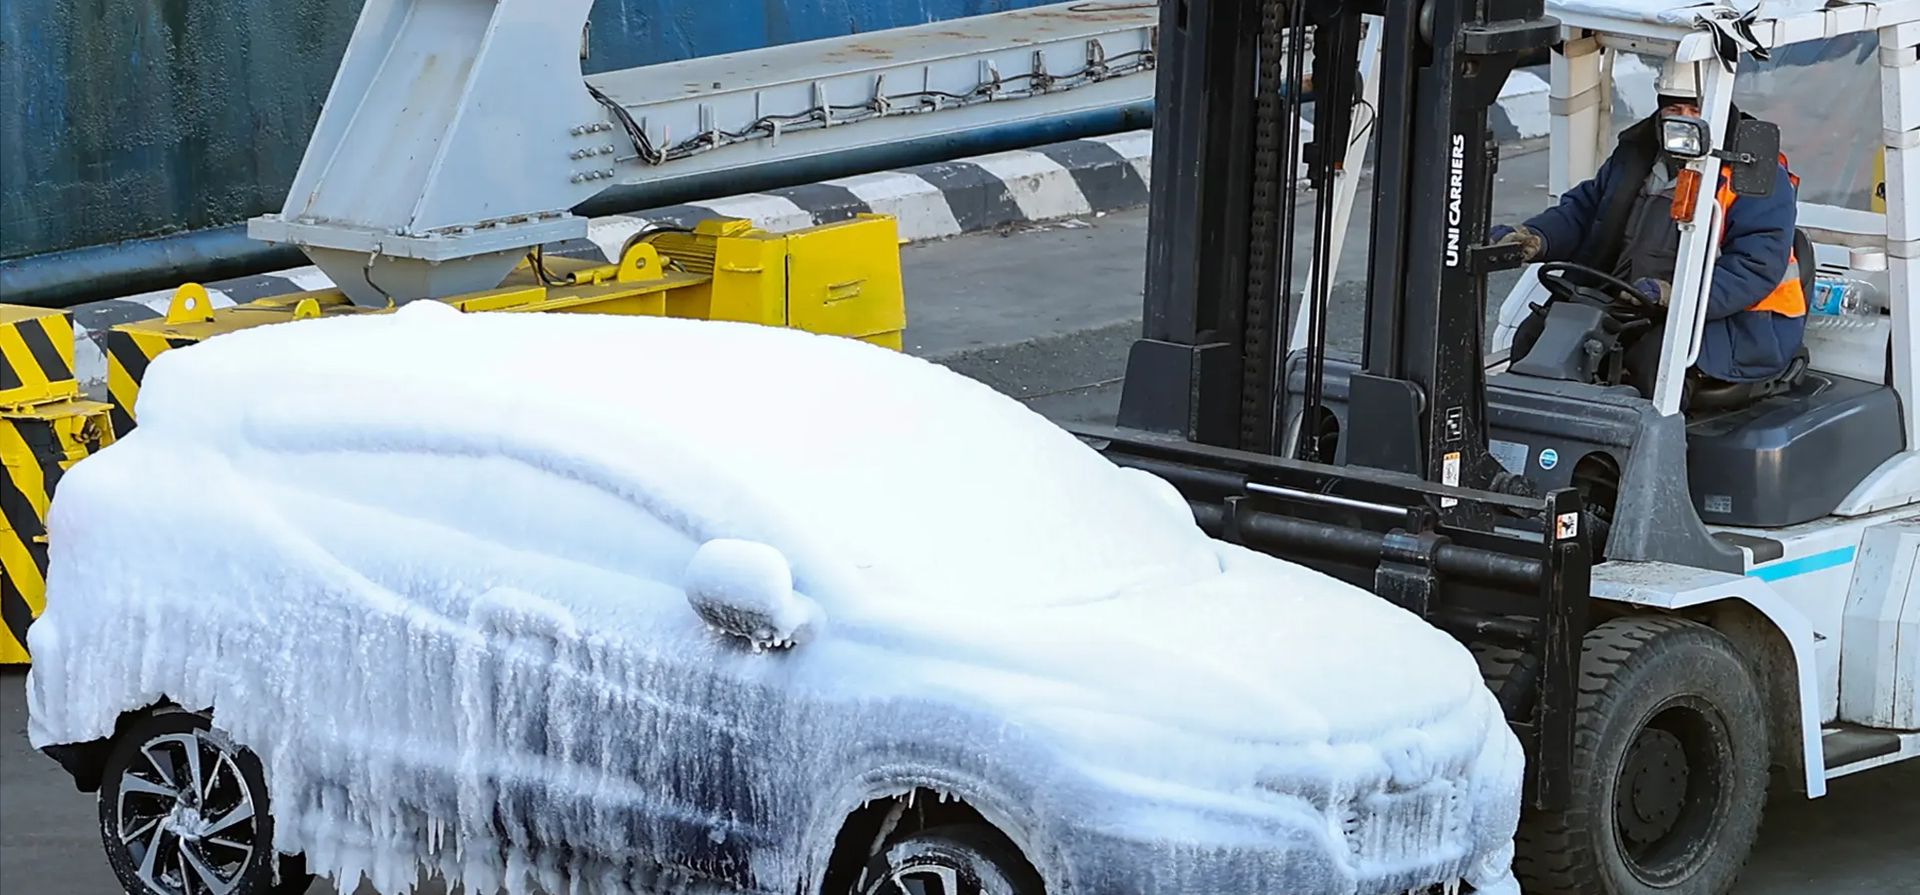 Un coche cubierto de hielo procedente de Japón se descarga en el puerto de Vladivostok, Rusia.  La formación de hielo en los barcos es causada por un viento marino húmedo, olas y temperaturas del aire bajo cero. Foto: Yuri Smityuk / Tass